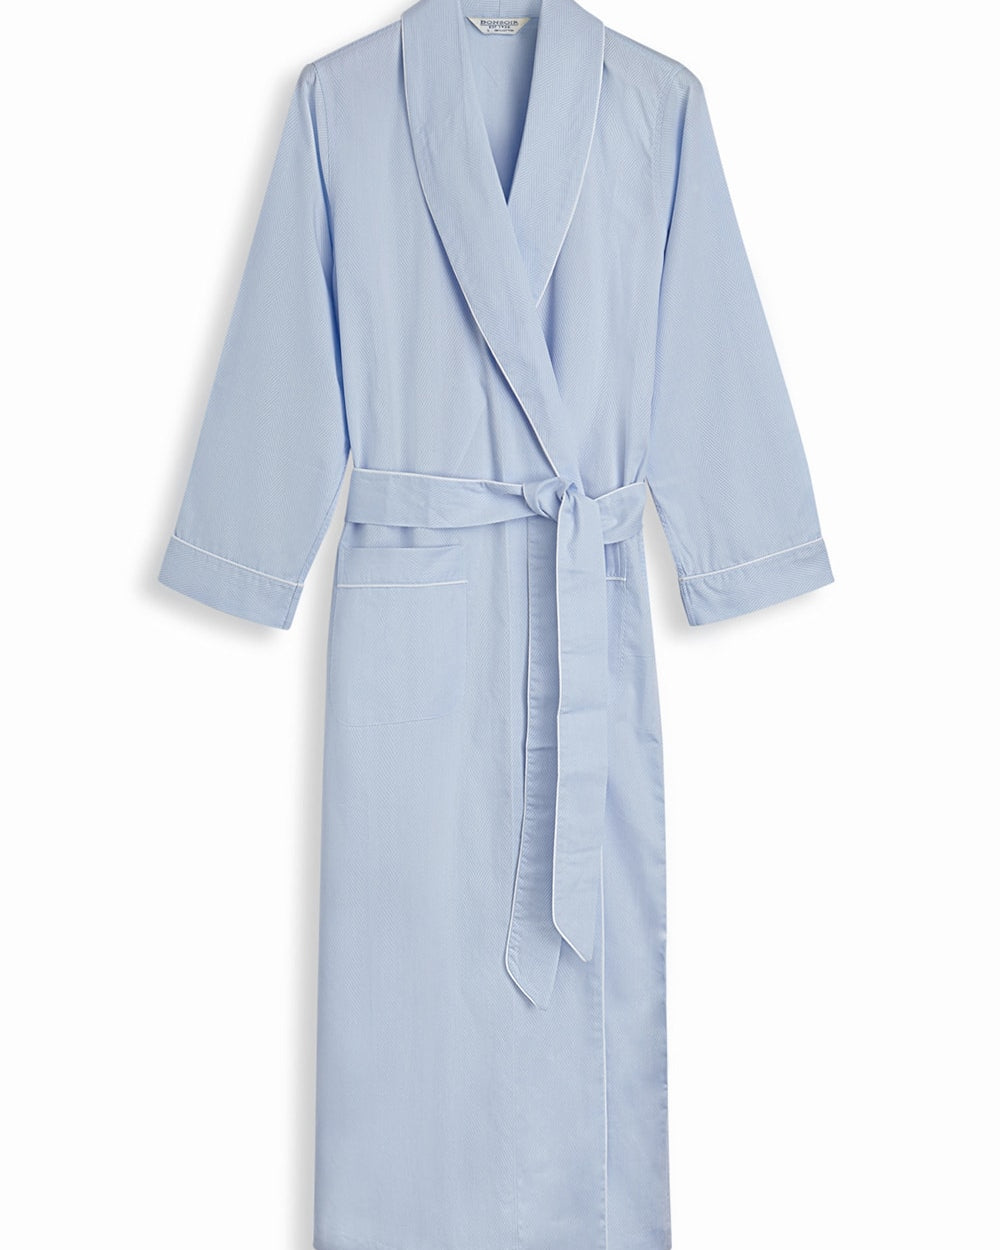 Women's Blue Jacquard Dressing Gown | Bonsoir of LondonWomen's Cotton Jacquard Dressing Gown - Blue | Bonsoir of London